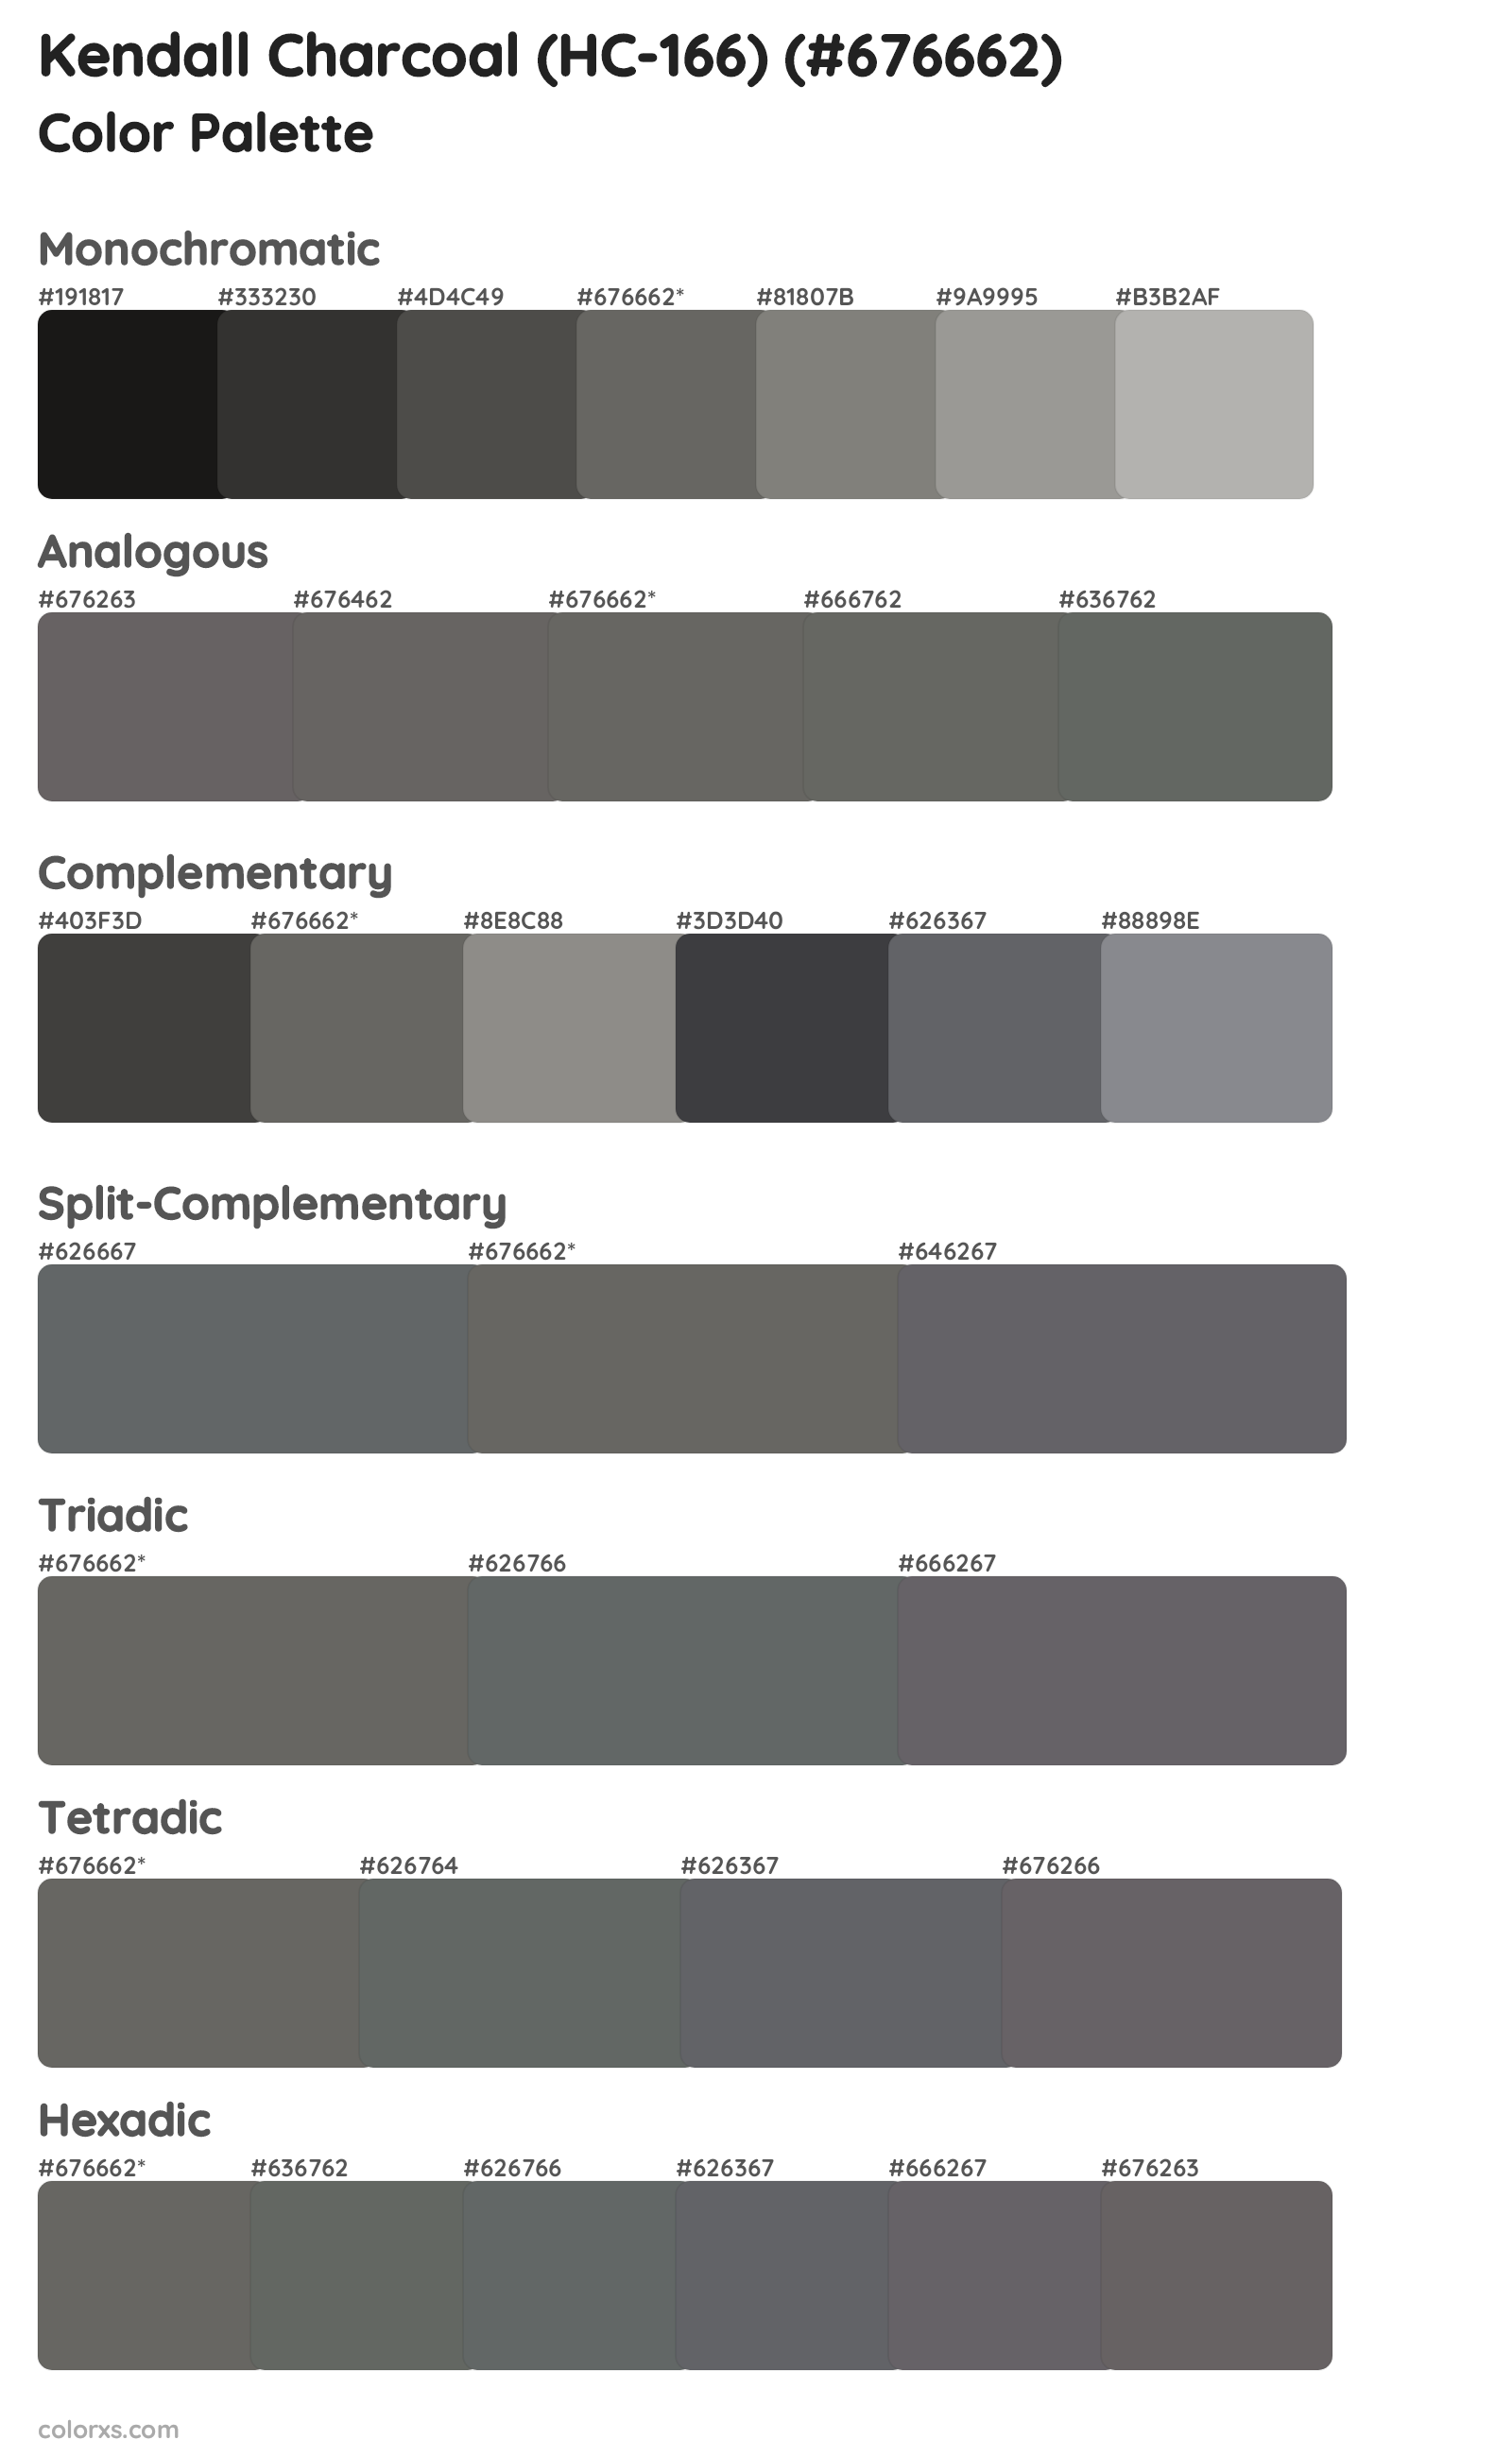 Kendall Charcoal (HC-166) Color Scheme Palettes